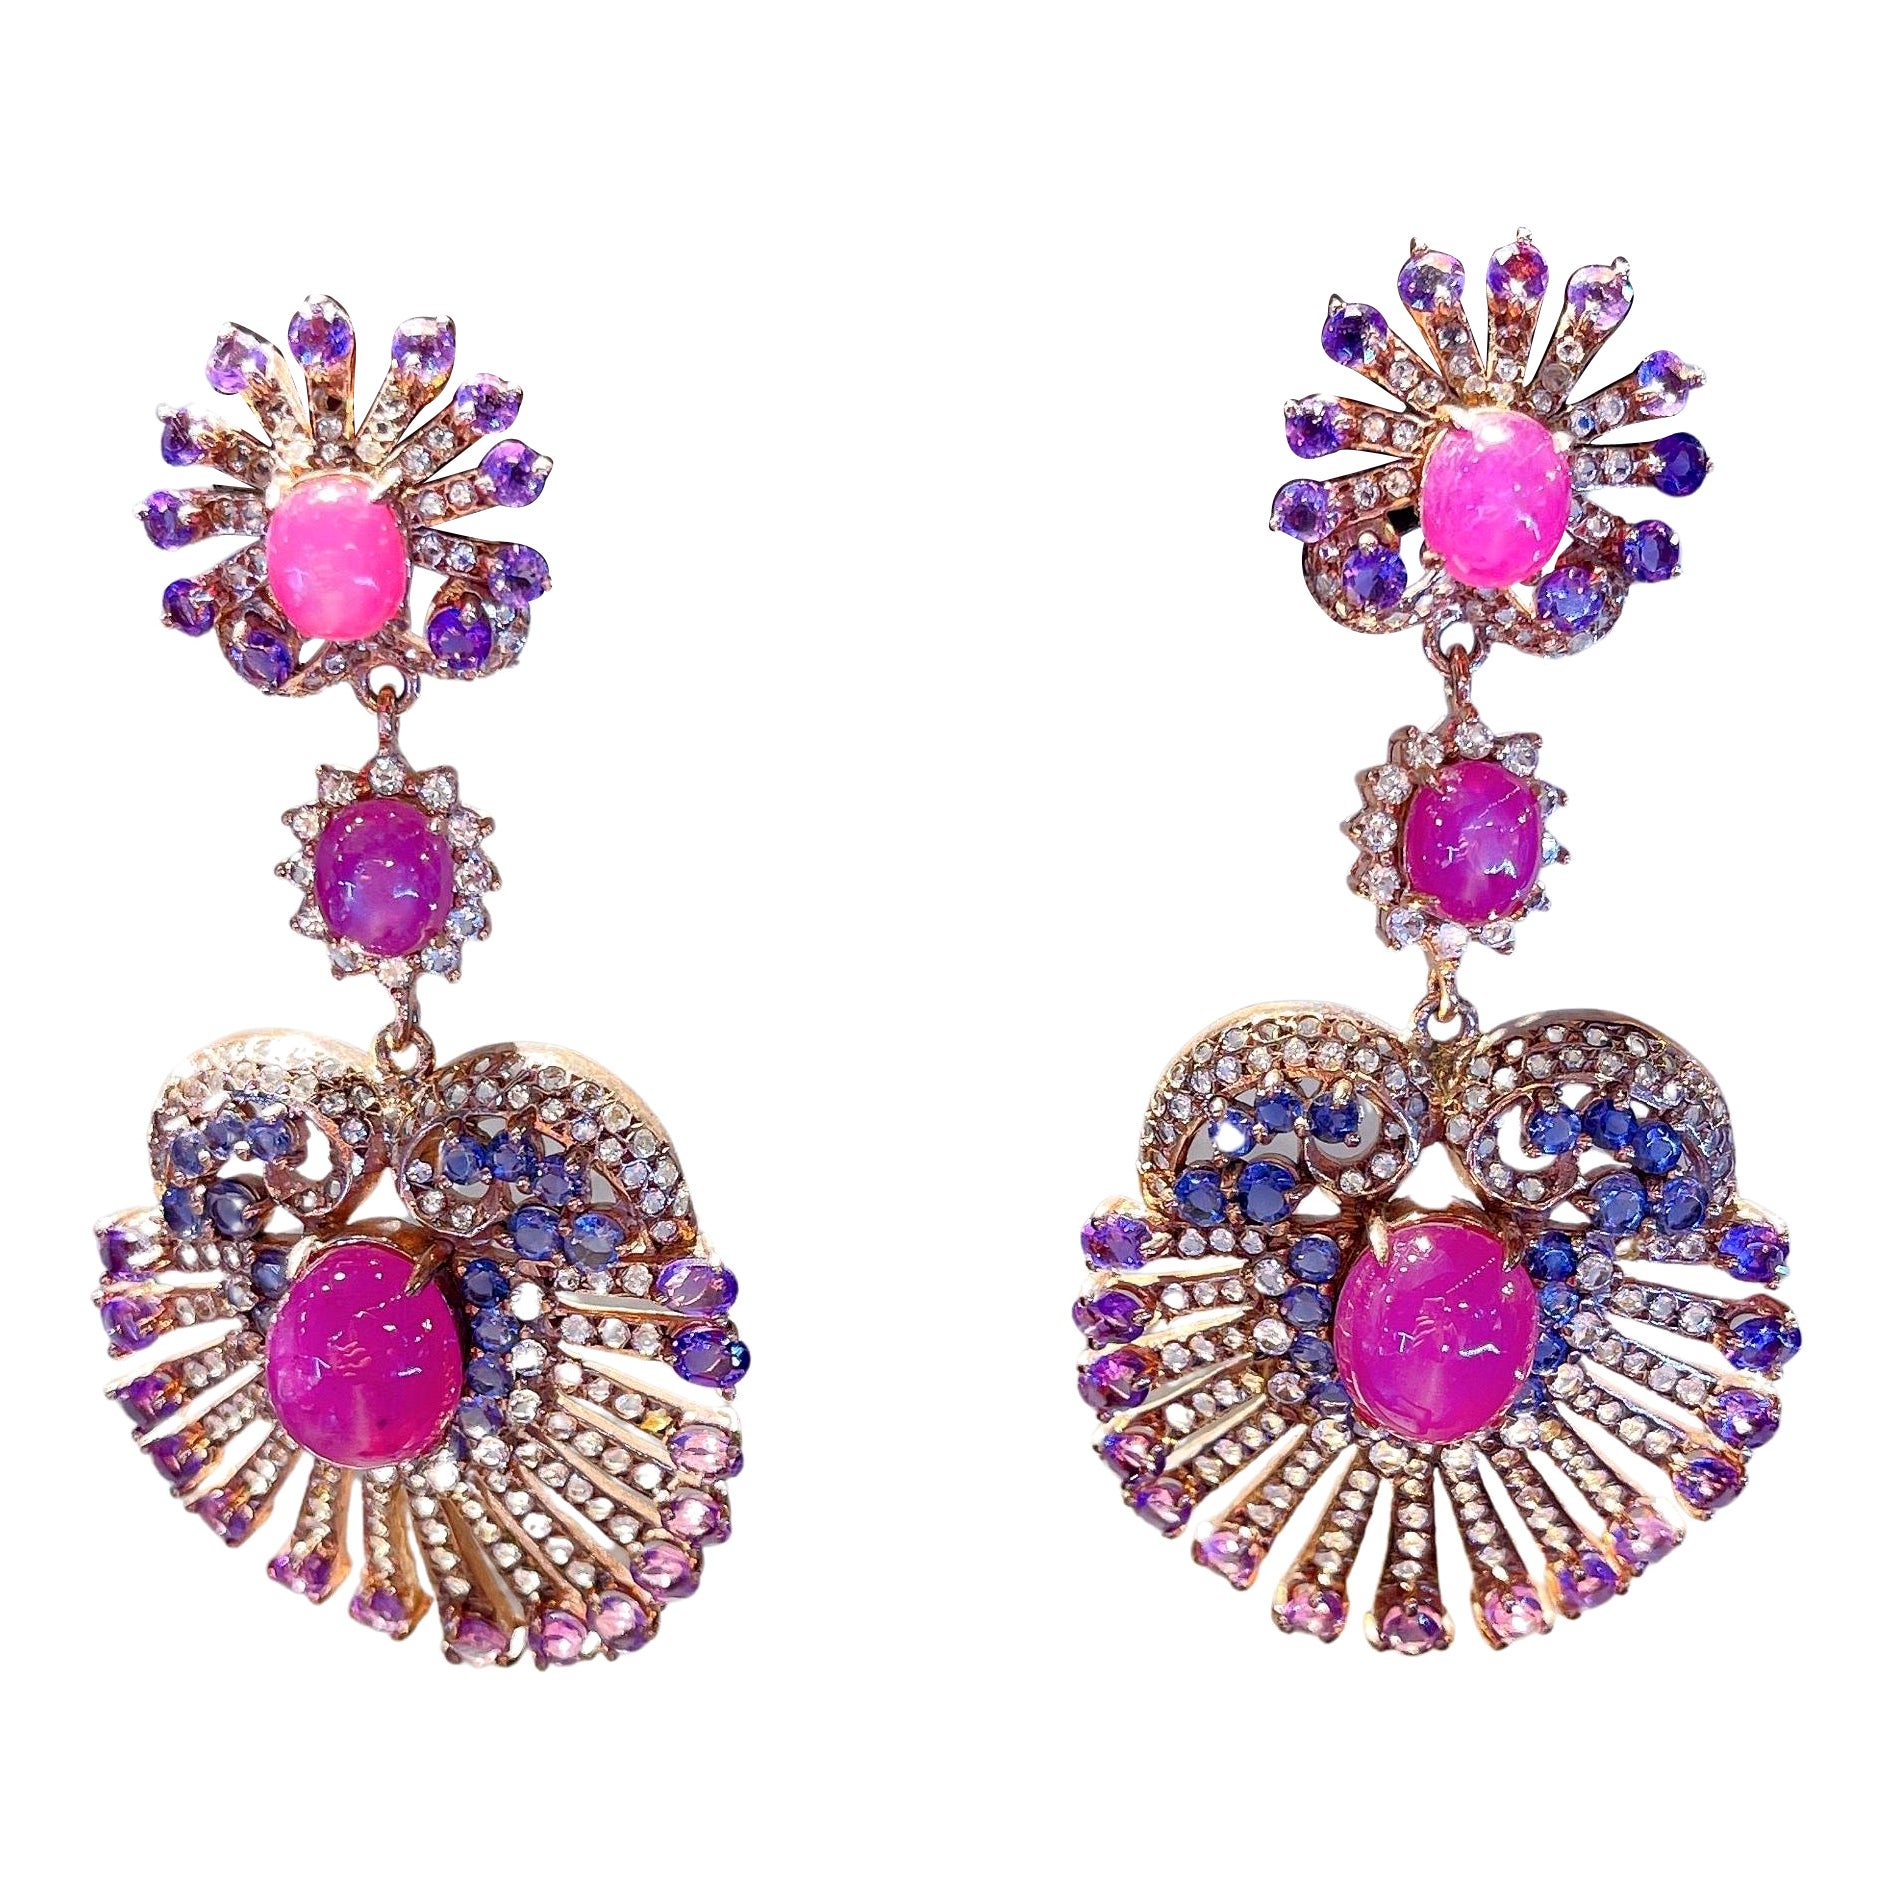 Bochic “Capri” Earrings, Ruby, Amethyst, Tanzanite & Topaz, Silver & 22k Gold For Sale